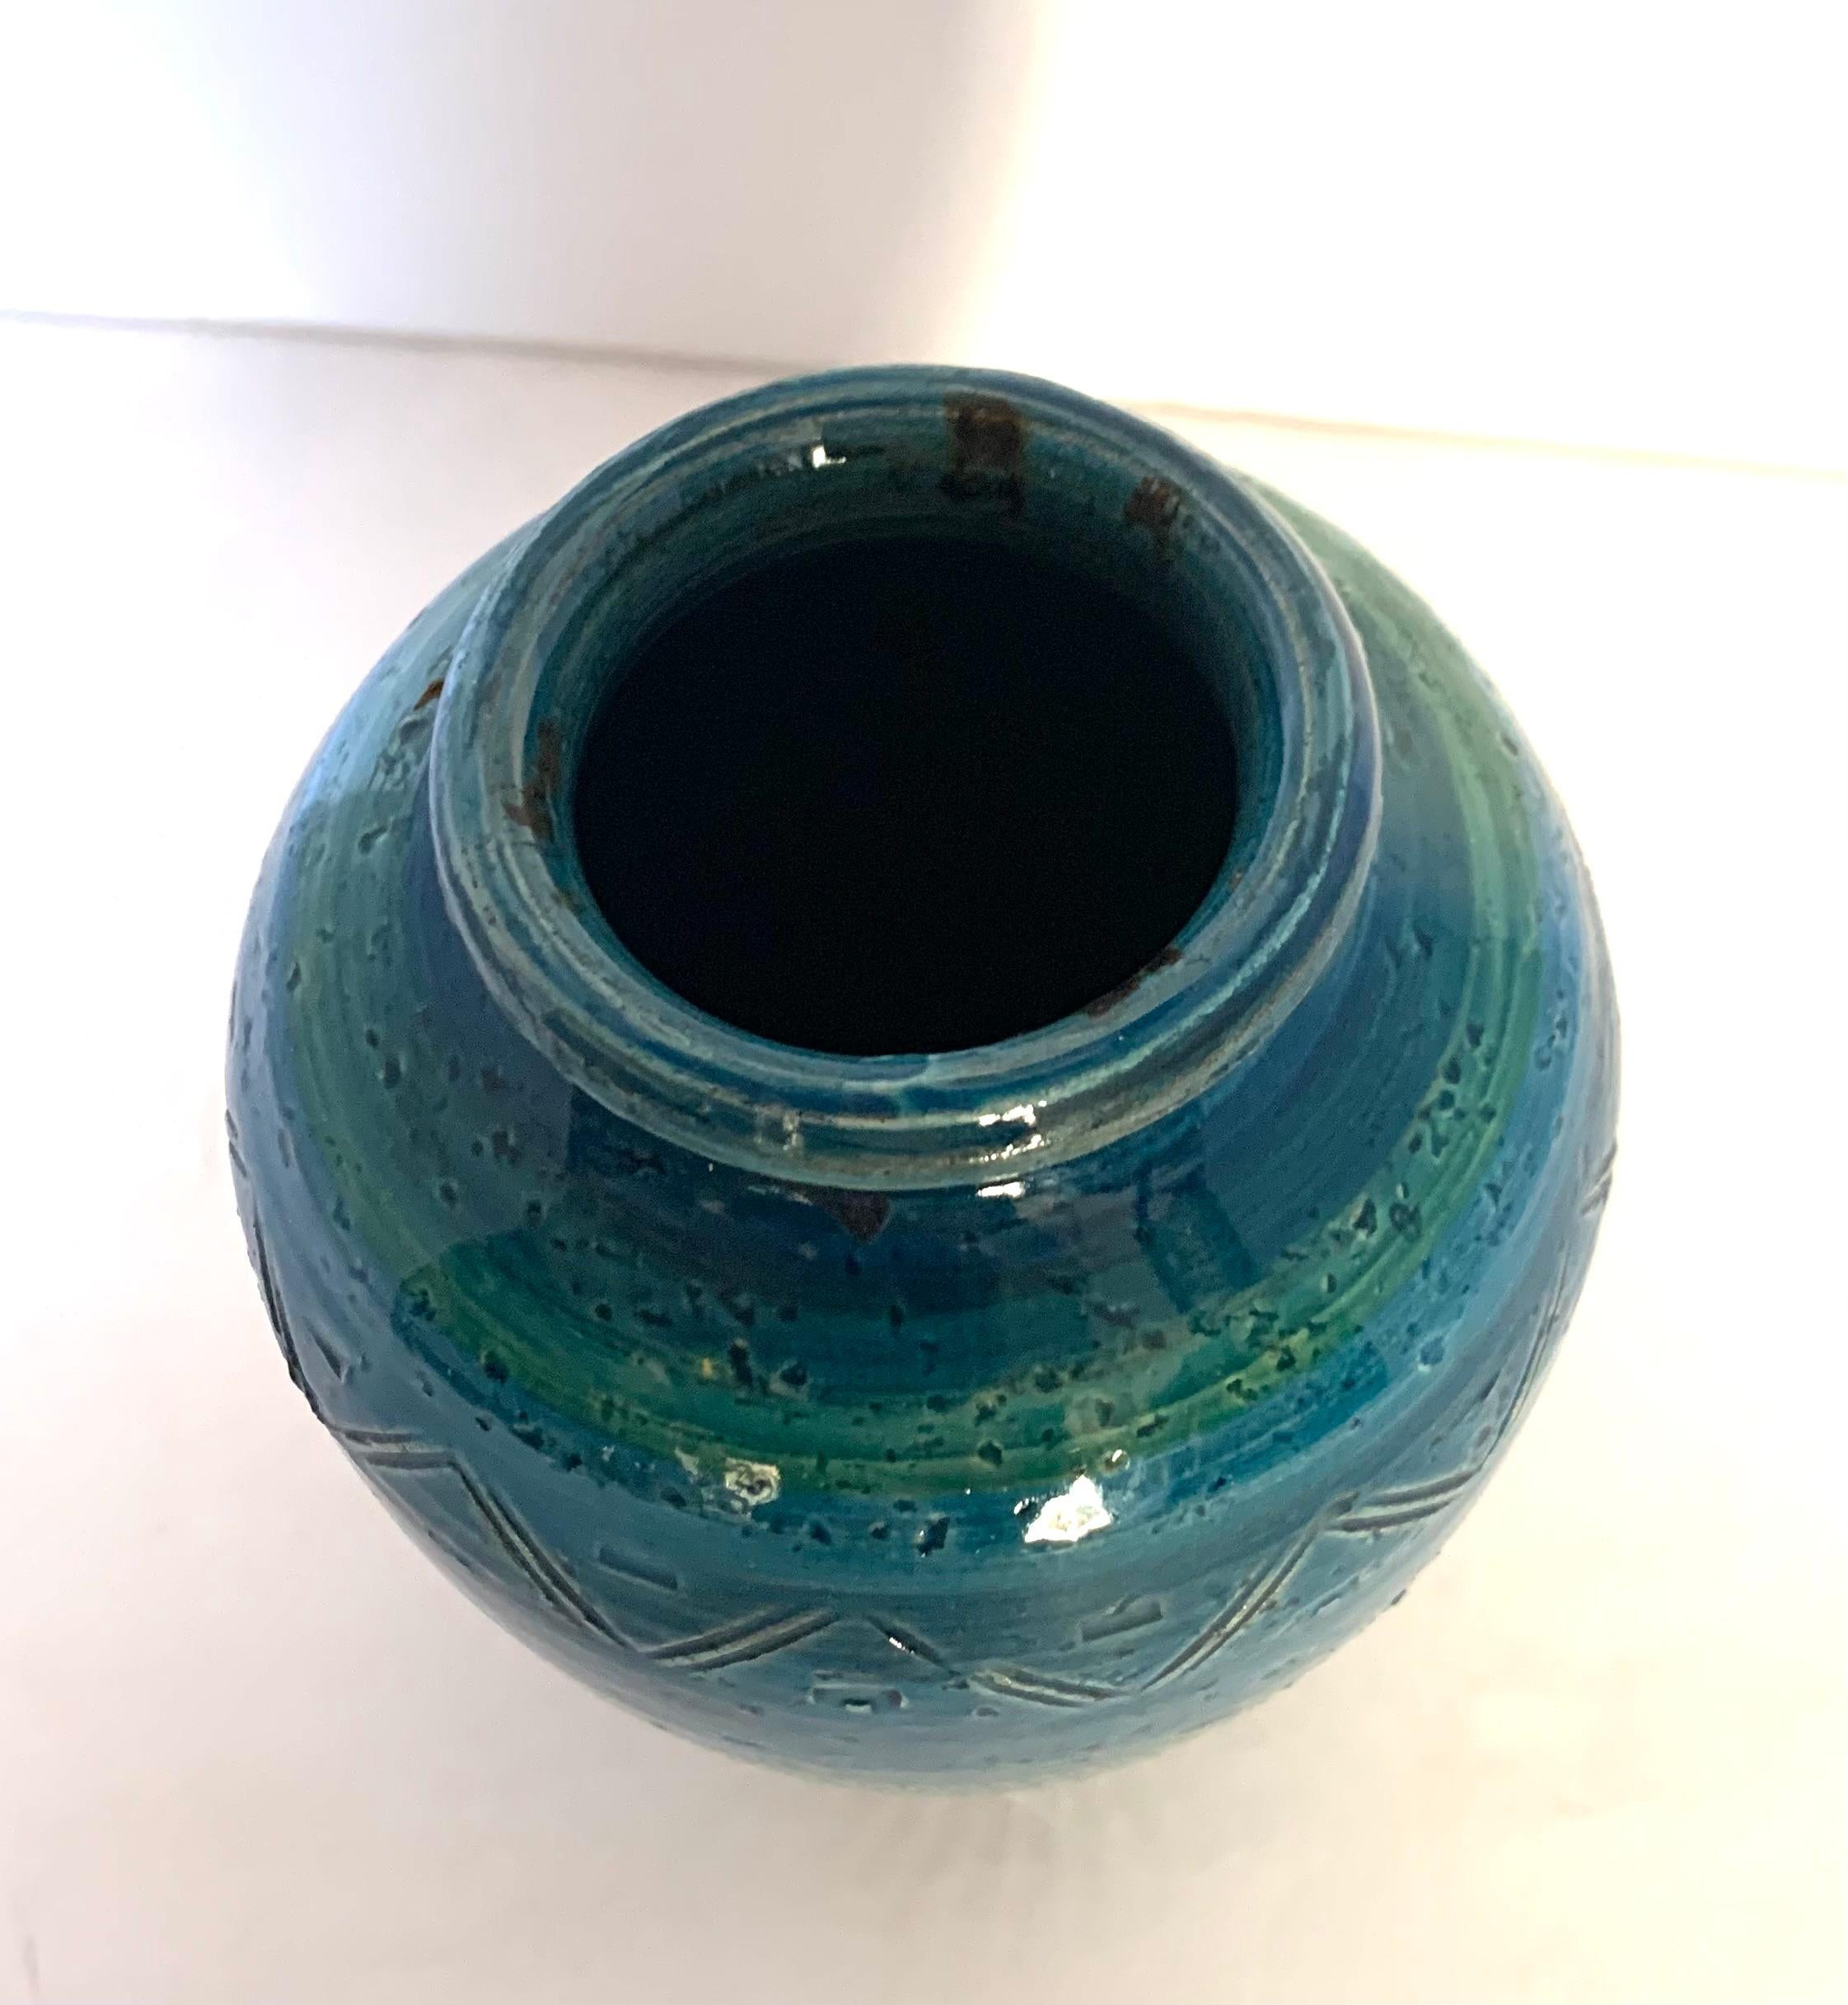 Vase français du milieu du siècle, émaillé bleu vif, à motif de chevrons.
Bande verte accentuée.
Peut contenir de l'eau.
D'une grande collection.